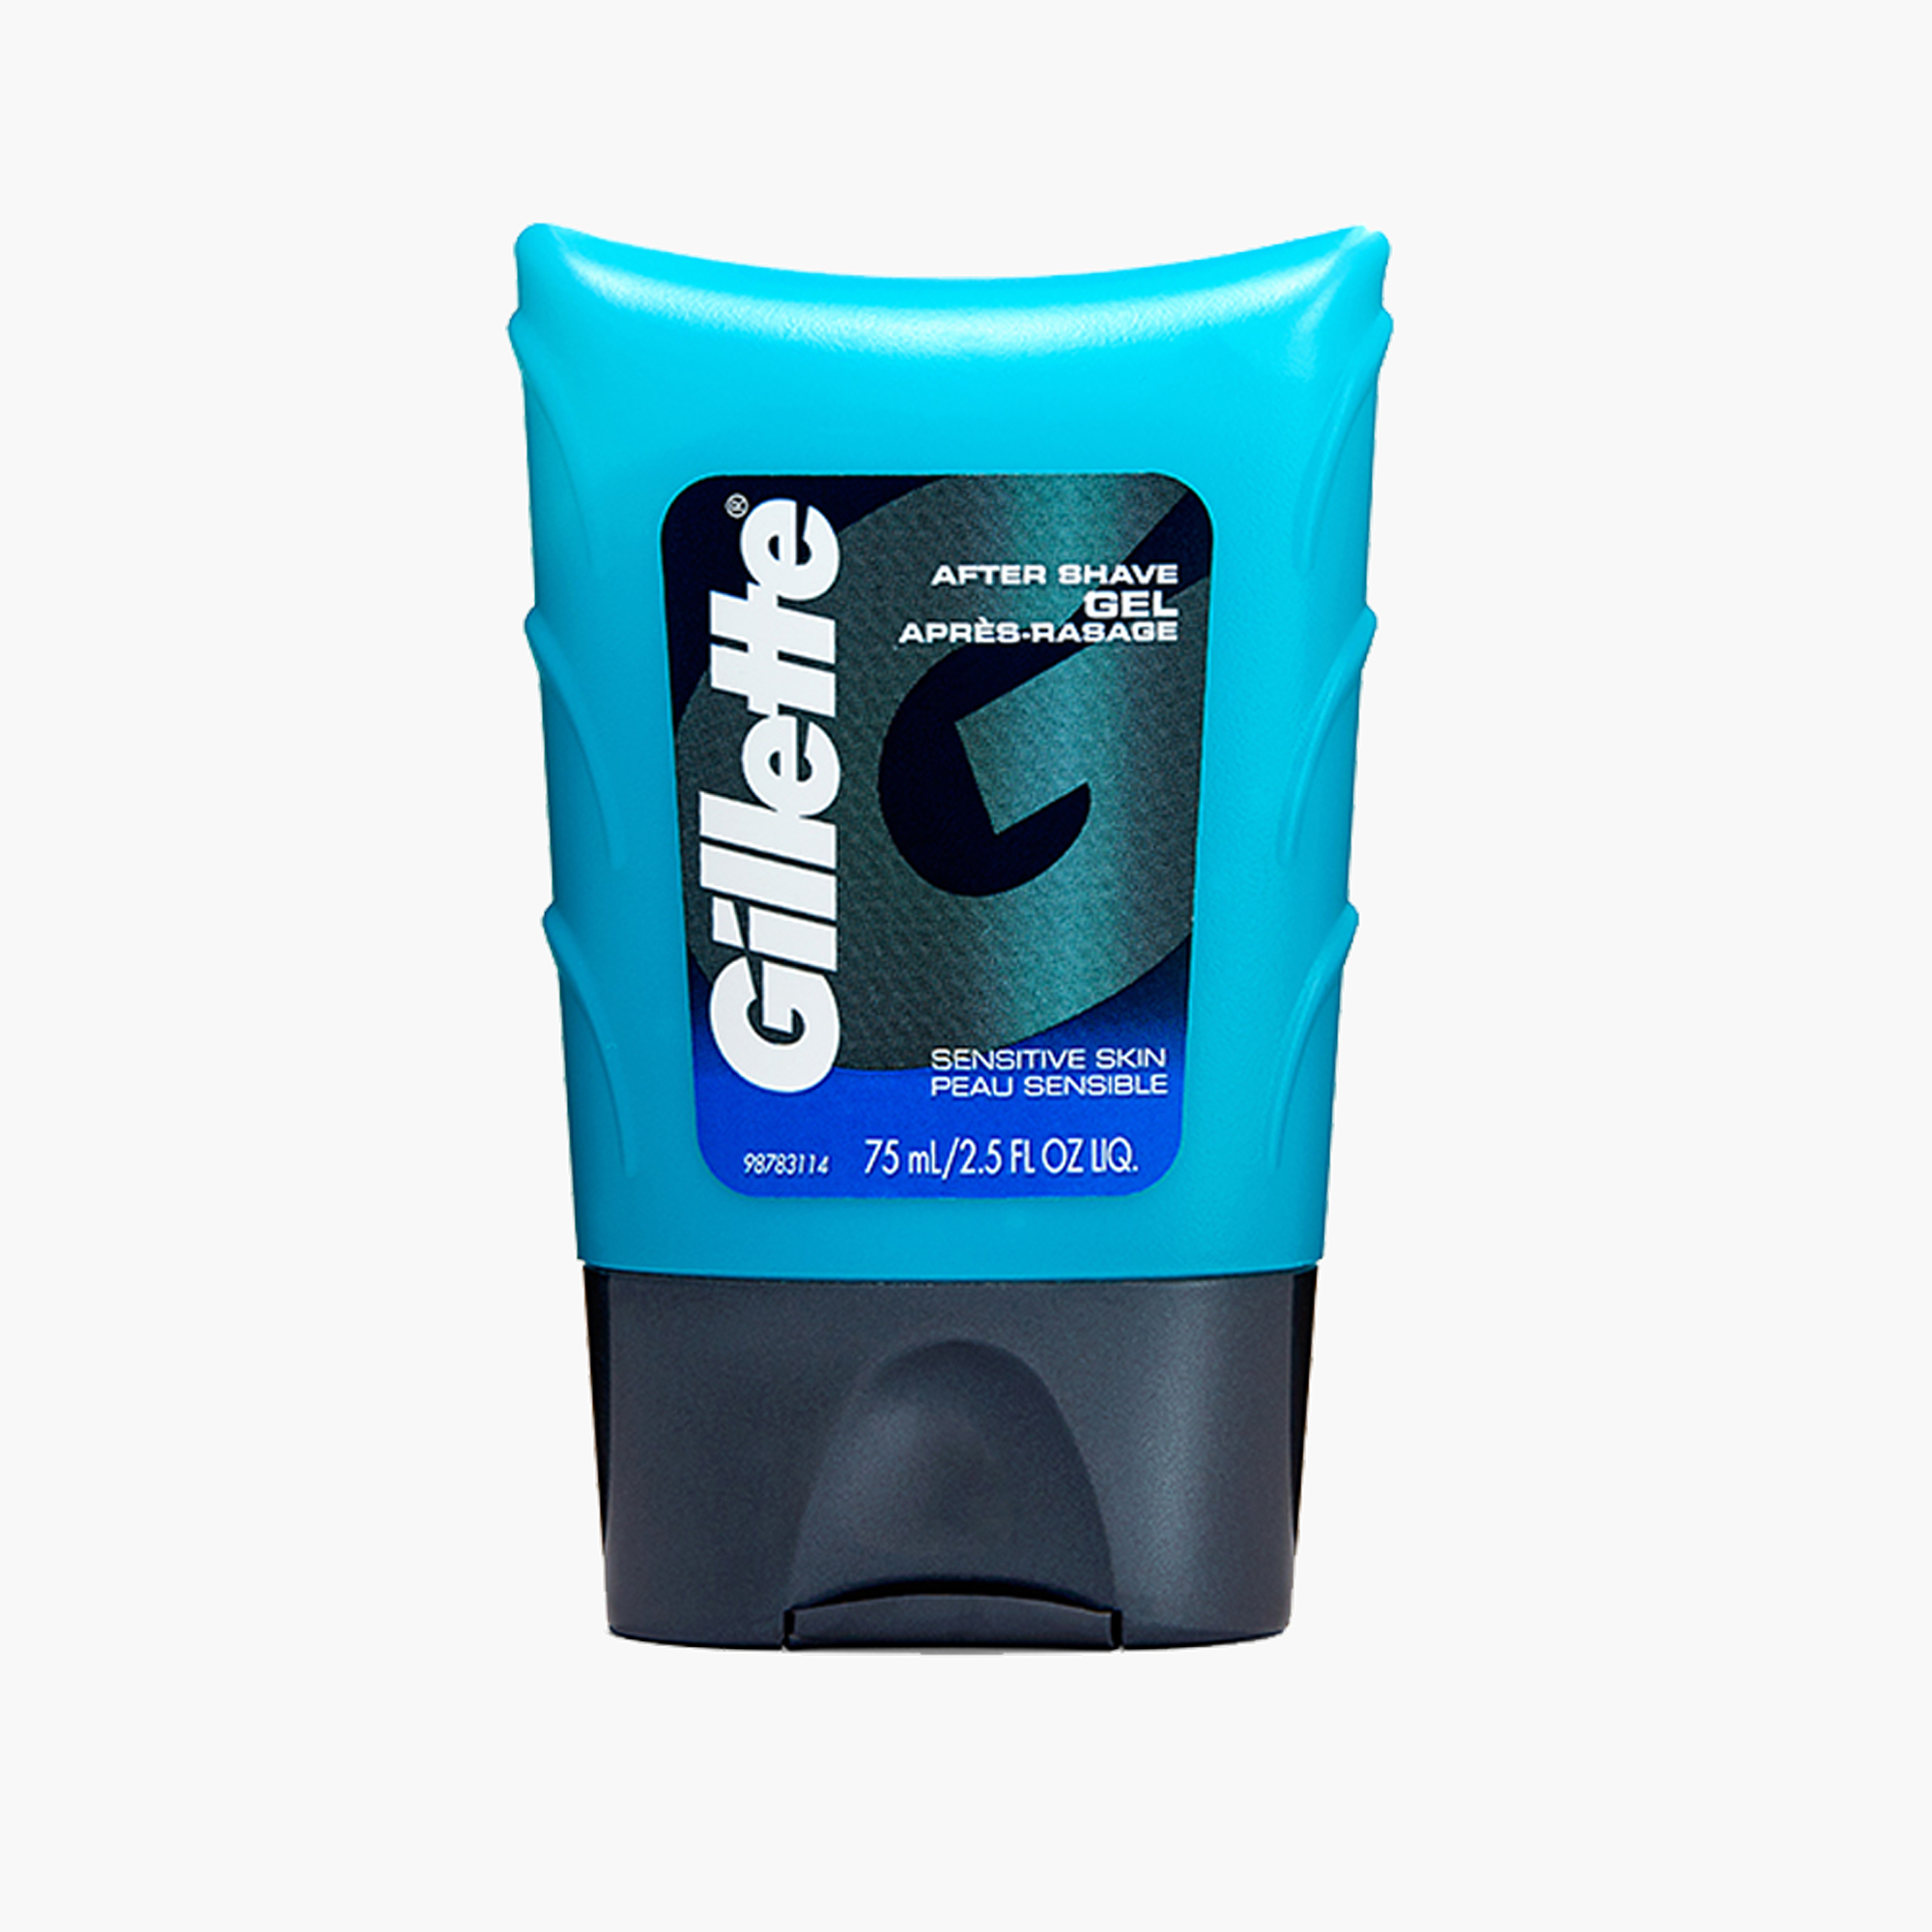 Gillette Aftershave Gel for Men, Sensitive Skin, 2.5 oz - image 7 of 7